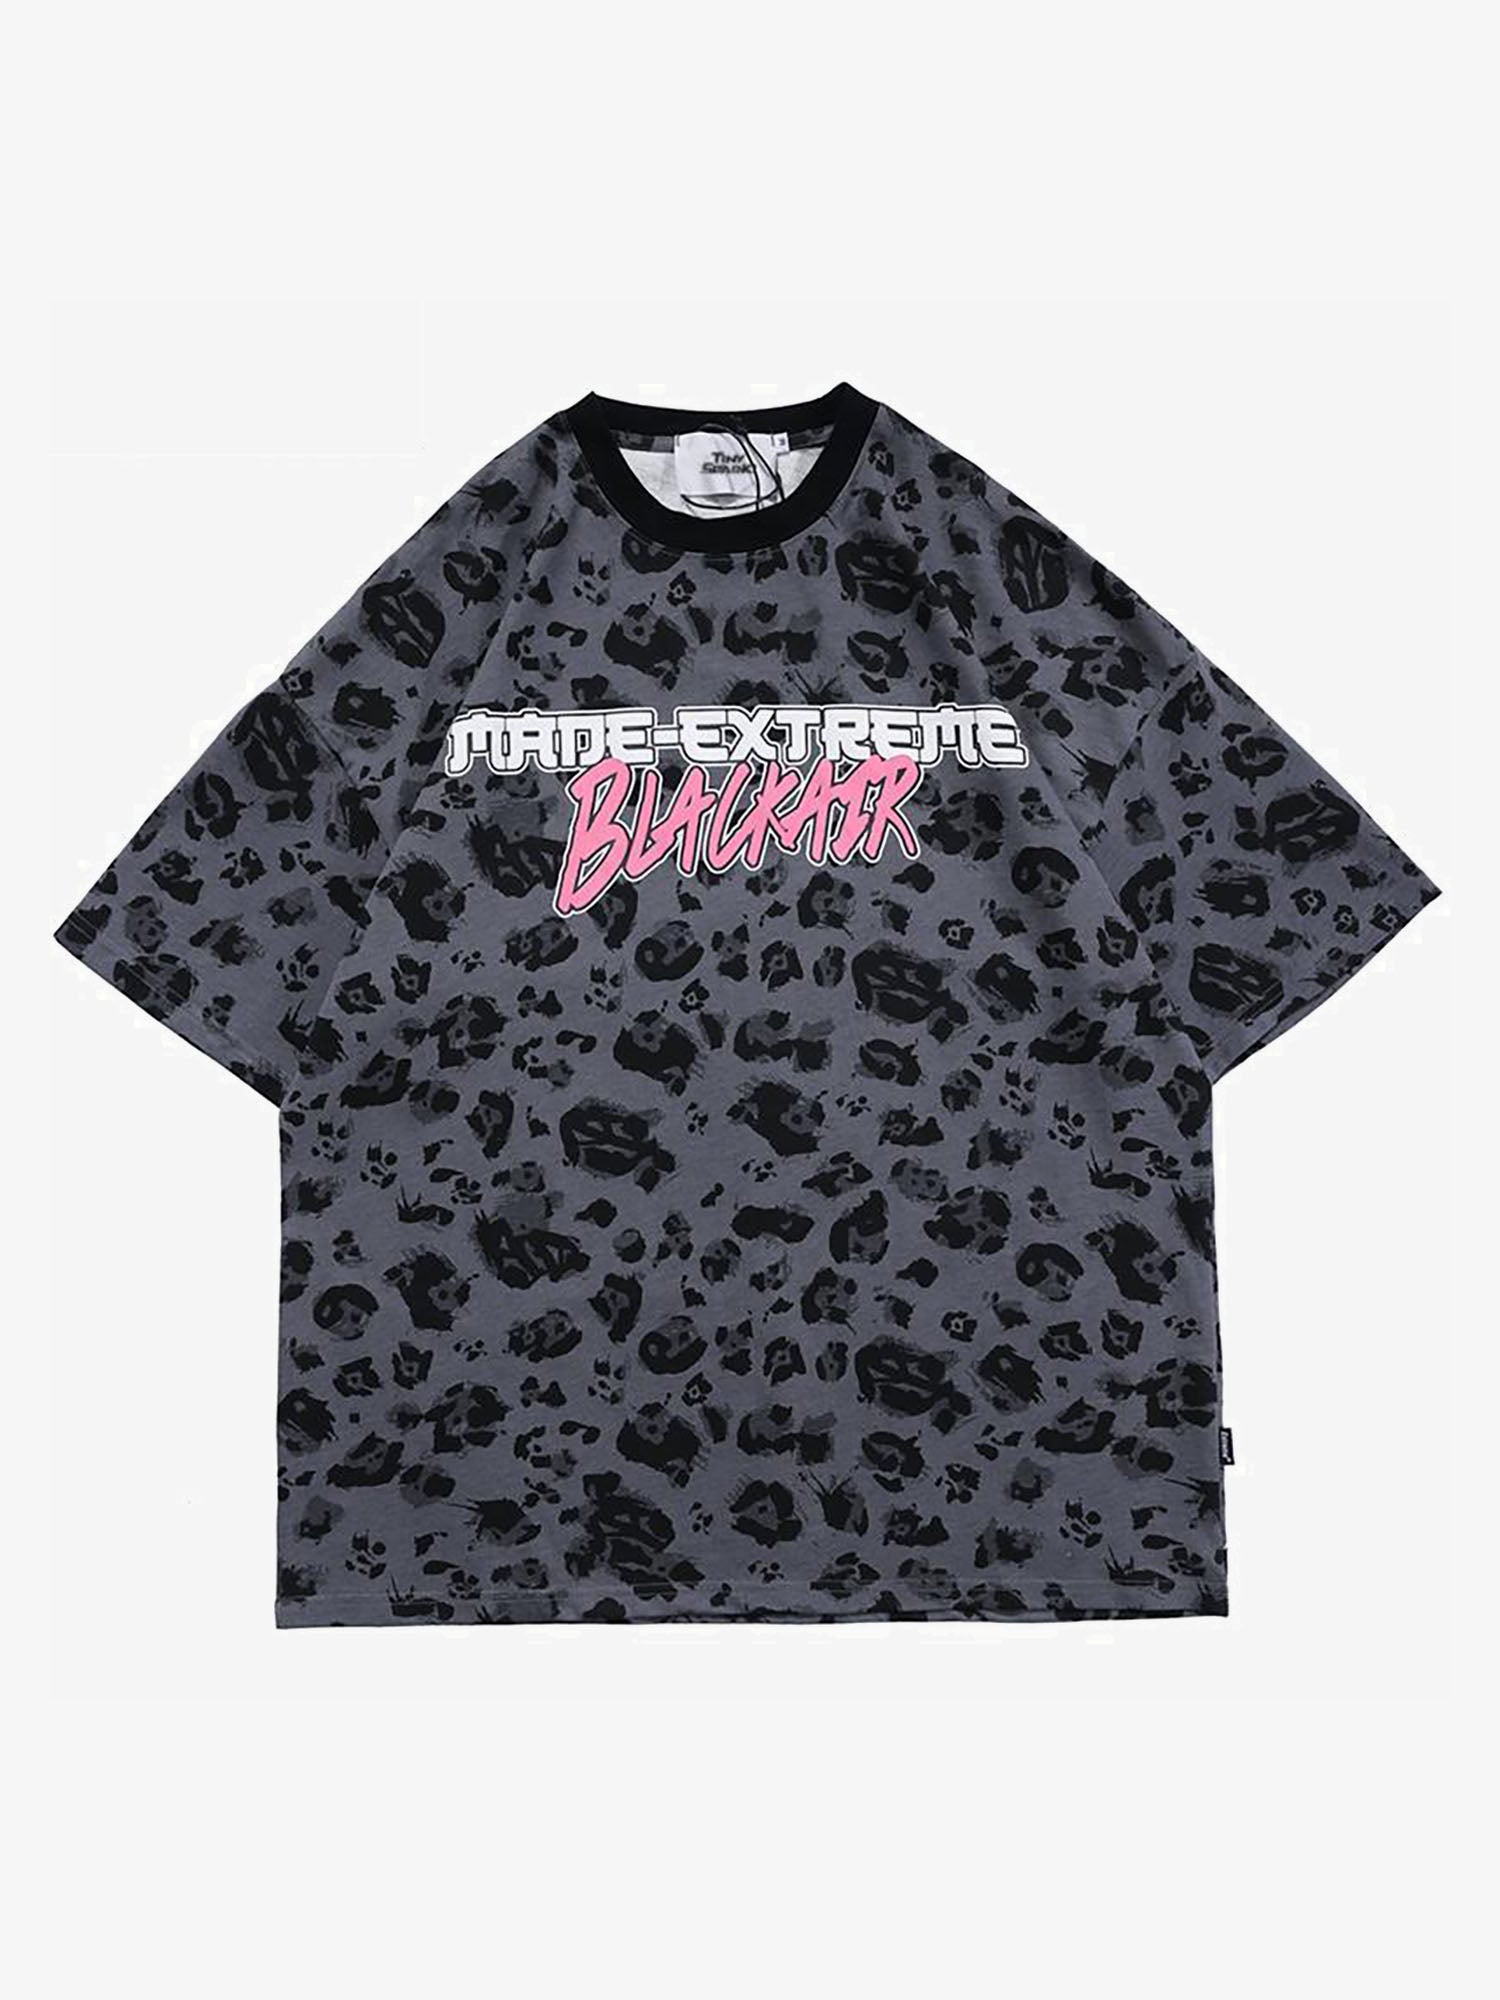 Justnotag T-shirt à manches courtes imprimé lettre léopard gris noir